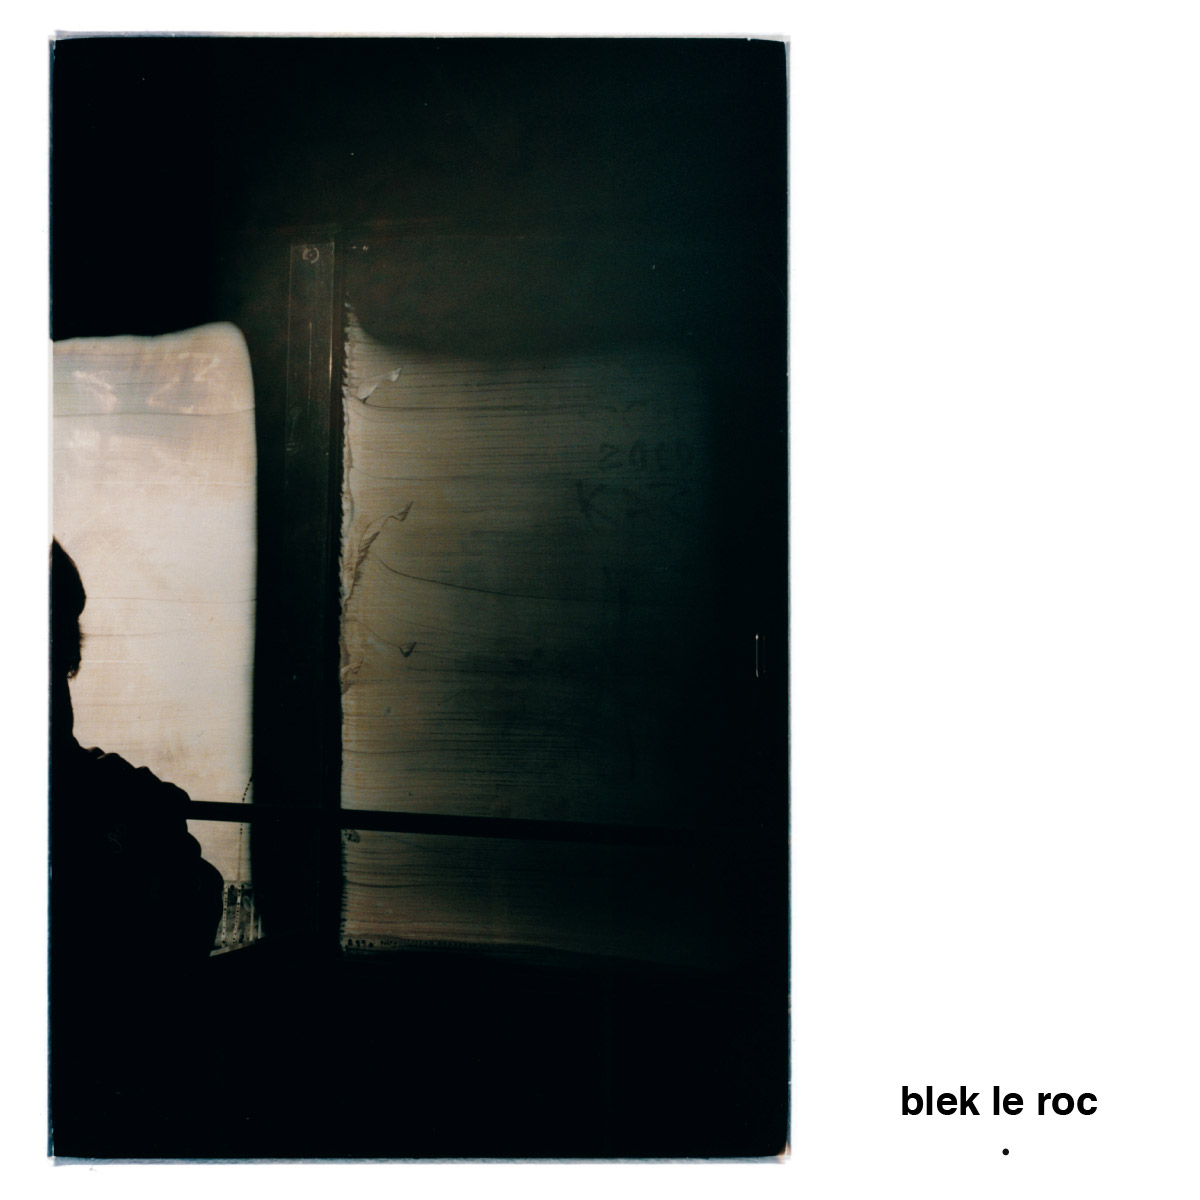 Blek Le Roc - Blek Le Roc